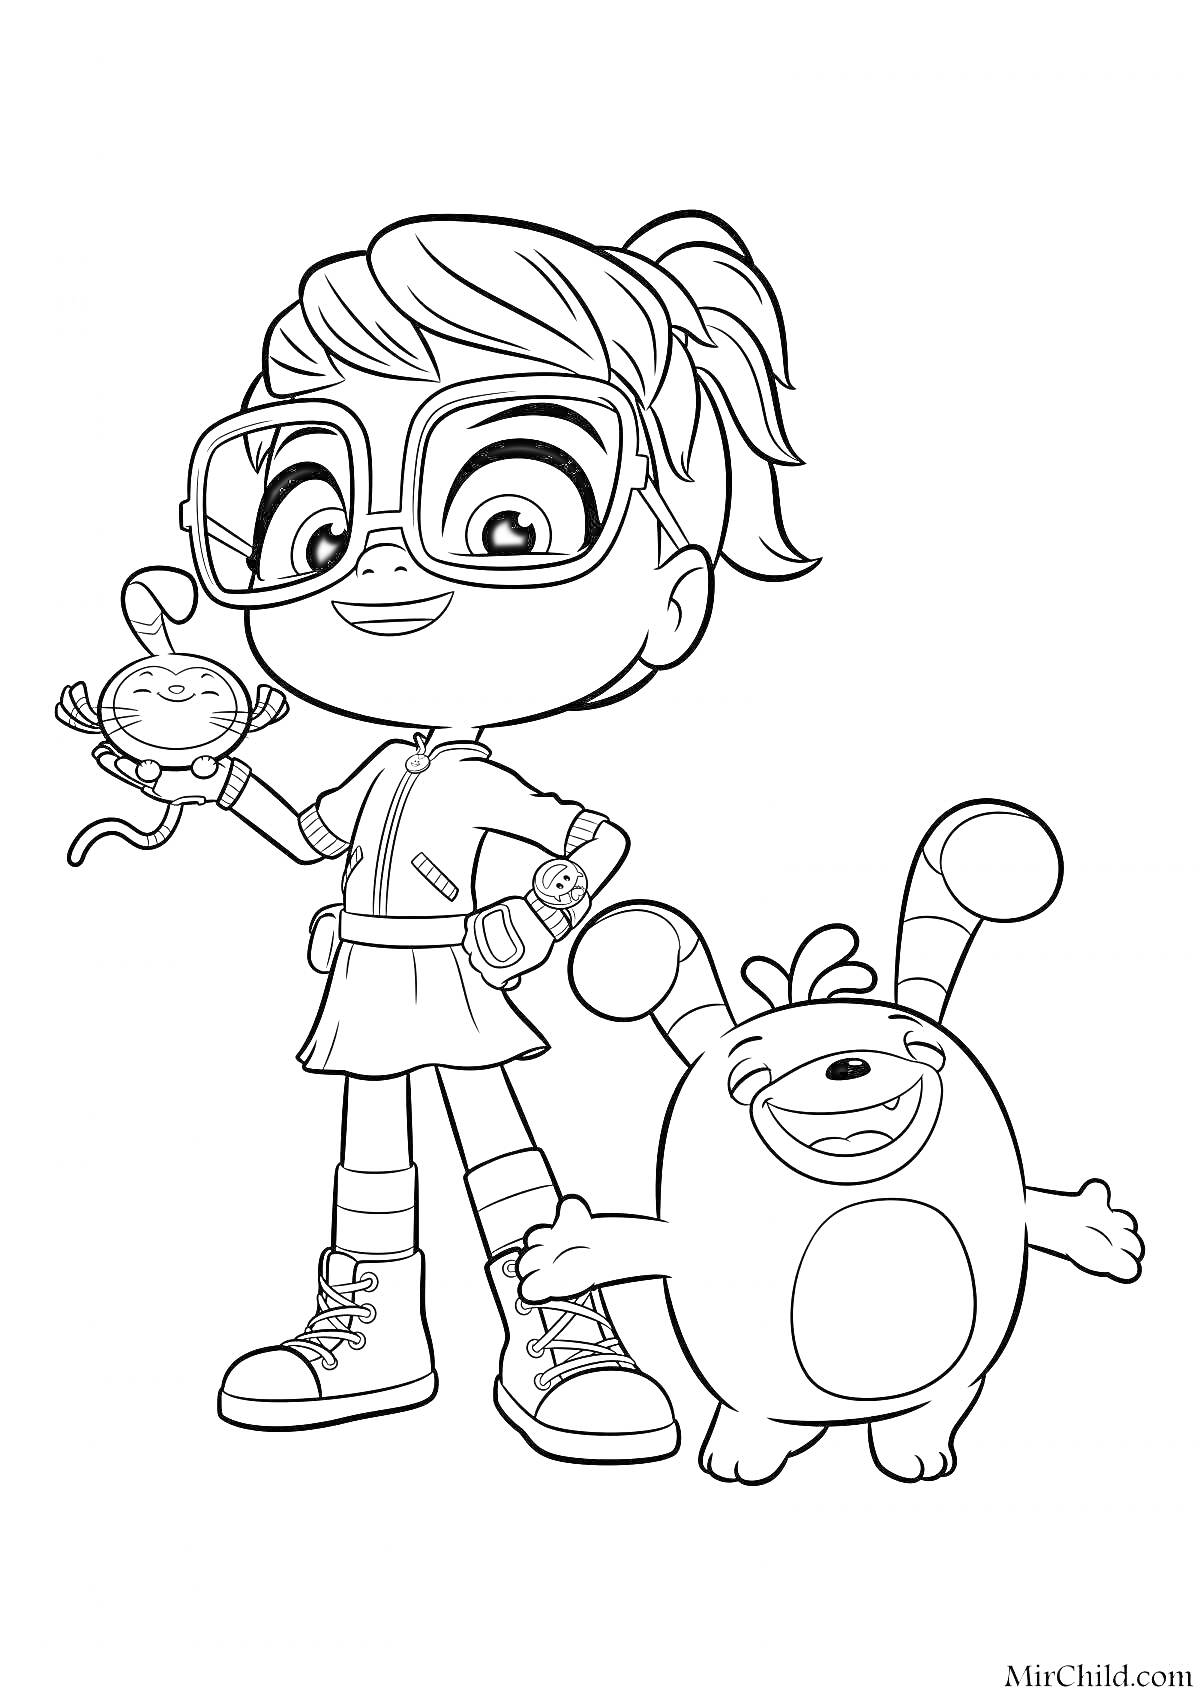 Девочка с очками и сборщенными волосами, держащая в руках игрушку-грабли, и стоящий рядом улыбающийся круглый персонаж с длинными ушами.